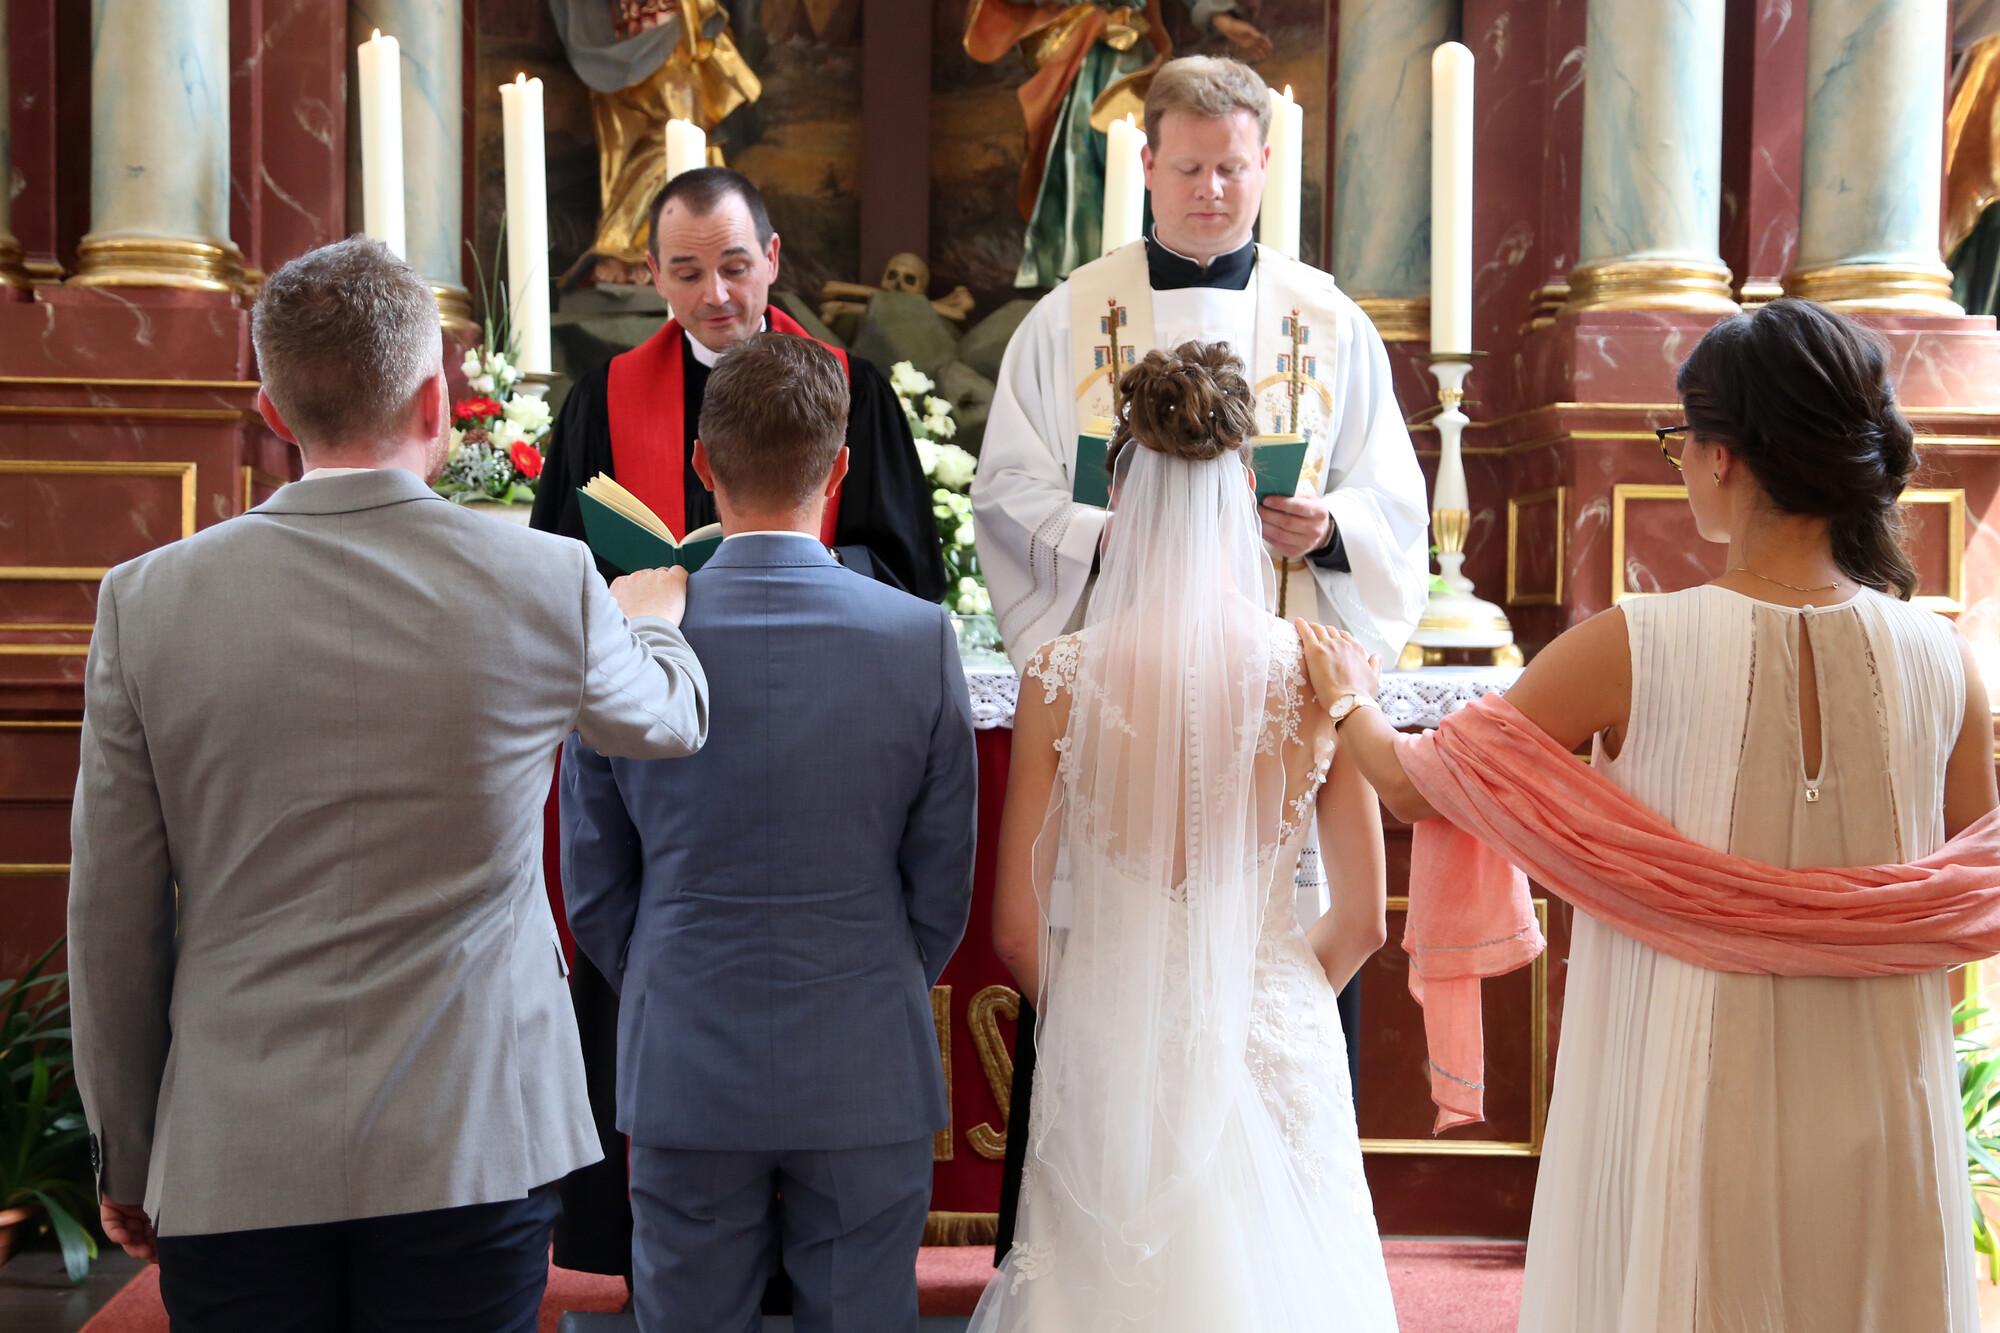 Ein Brautpaar mit Trauzeugen vor dem Altar. Vor dem Altar stehen ein katholischer und ein evangelischer Pfarrer